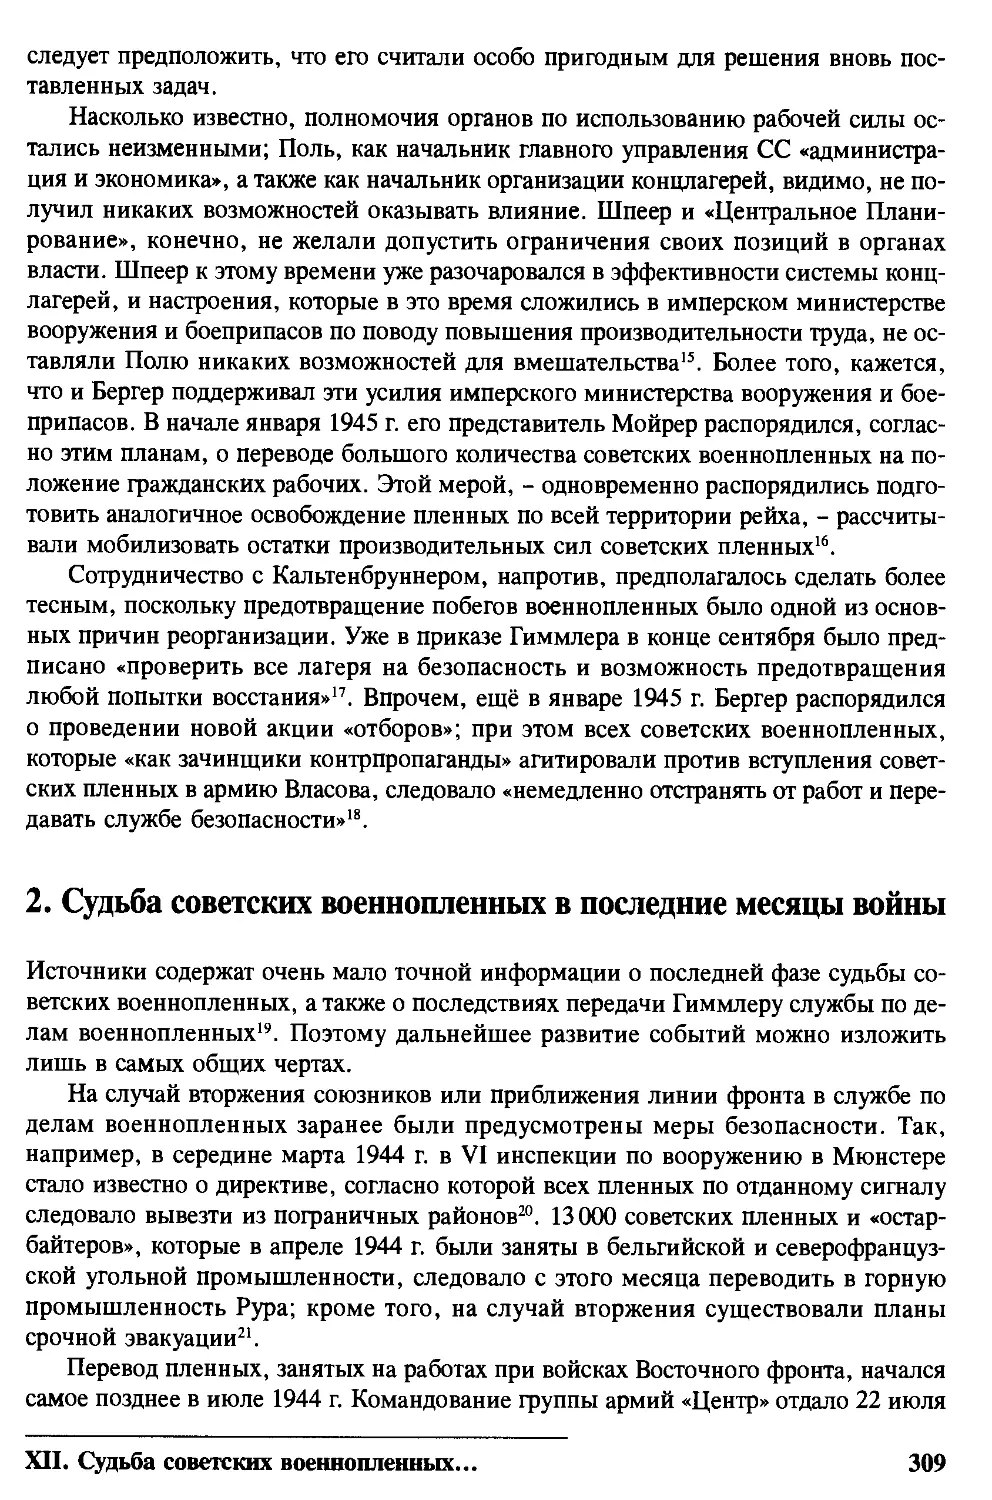 2. Судьба советских военнопленных в последние месяцы войны